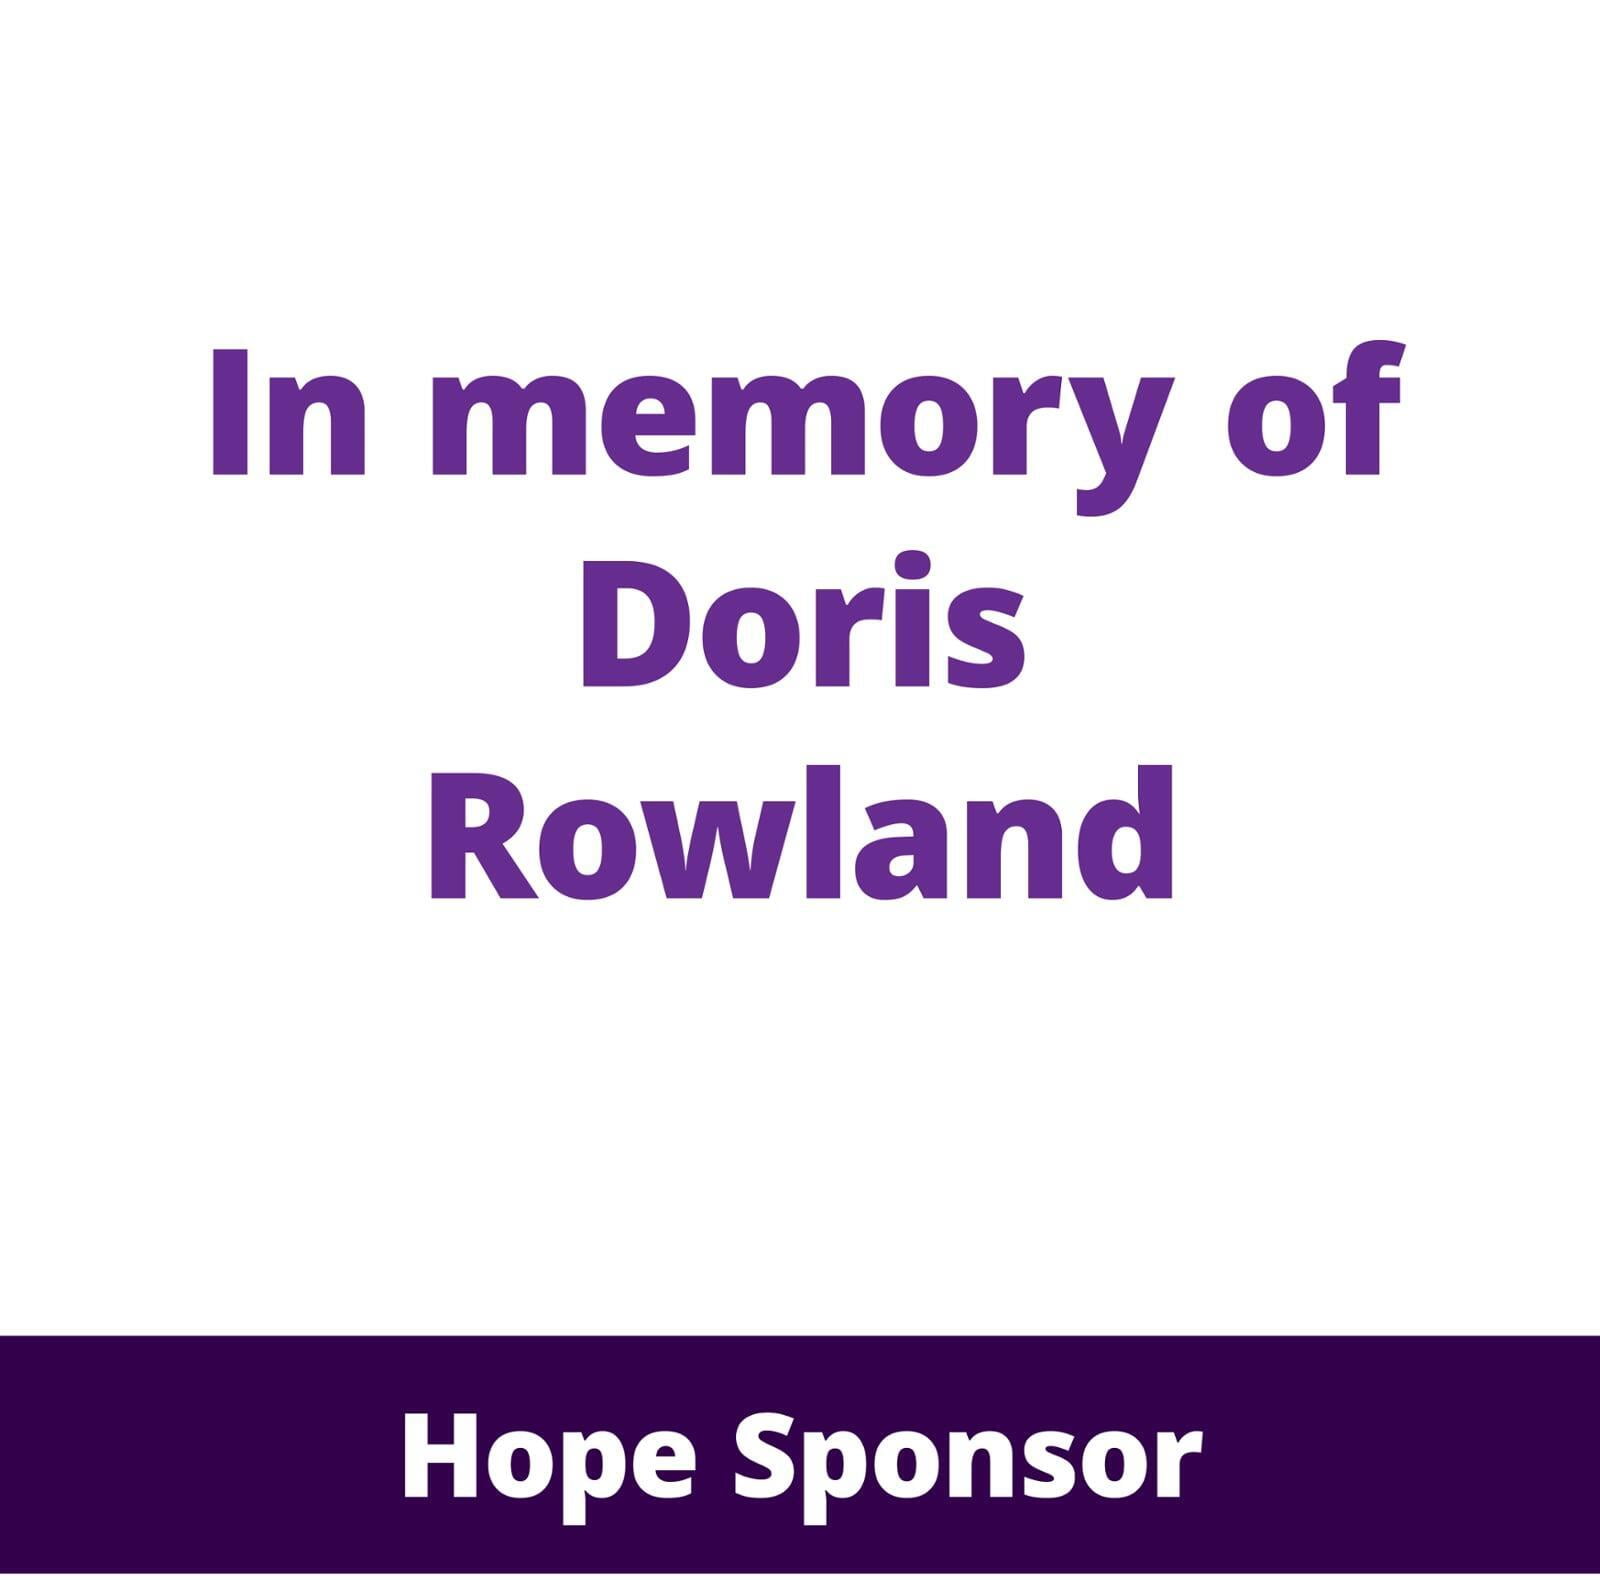 In memory of Doris Rowland